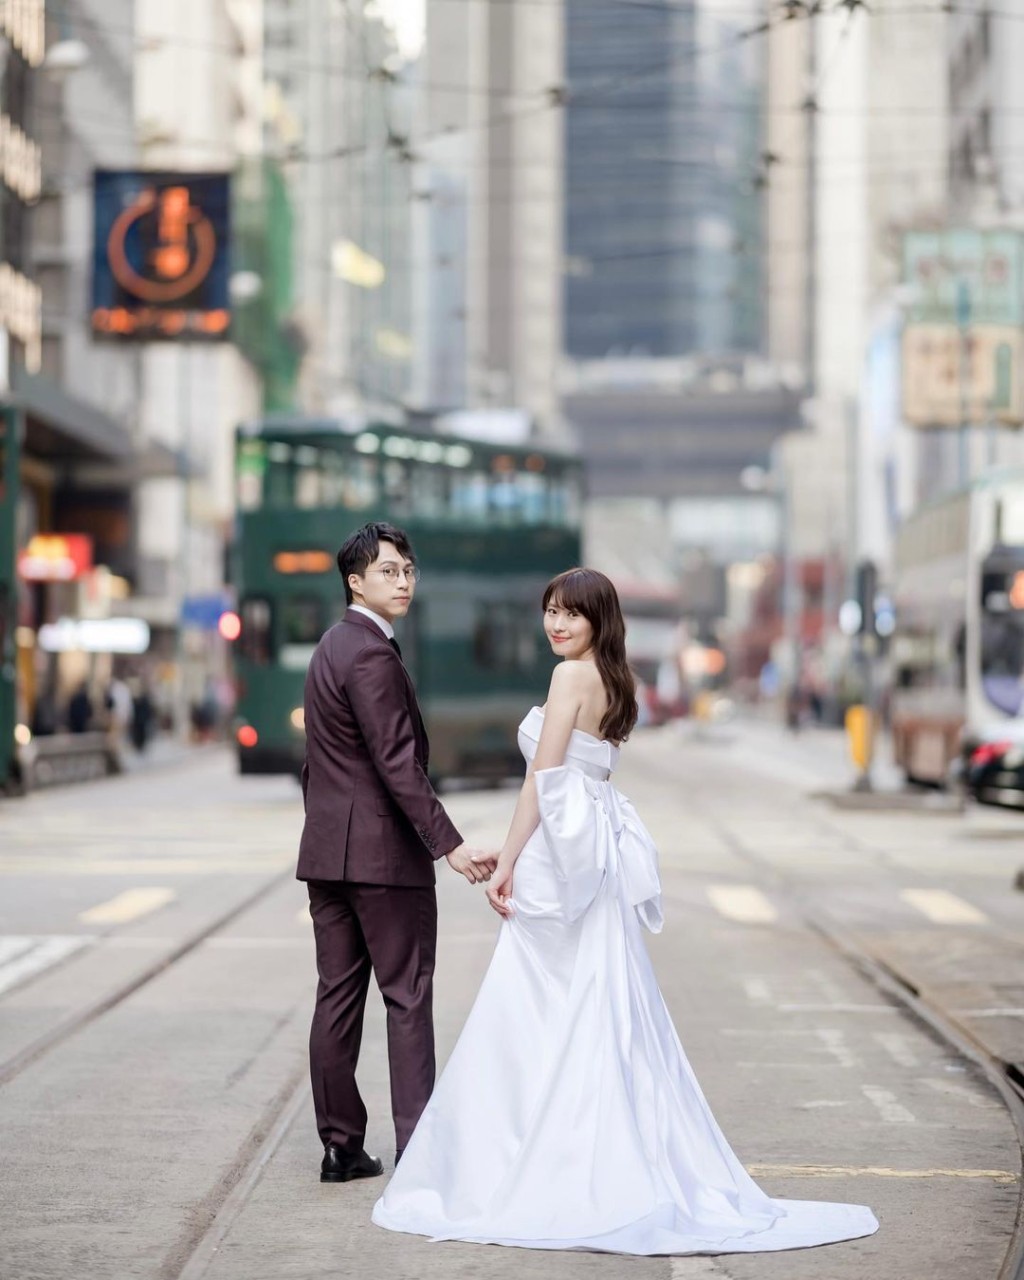 婚纱相好有香港特色。